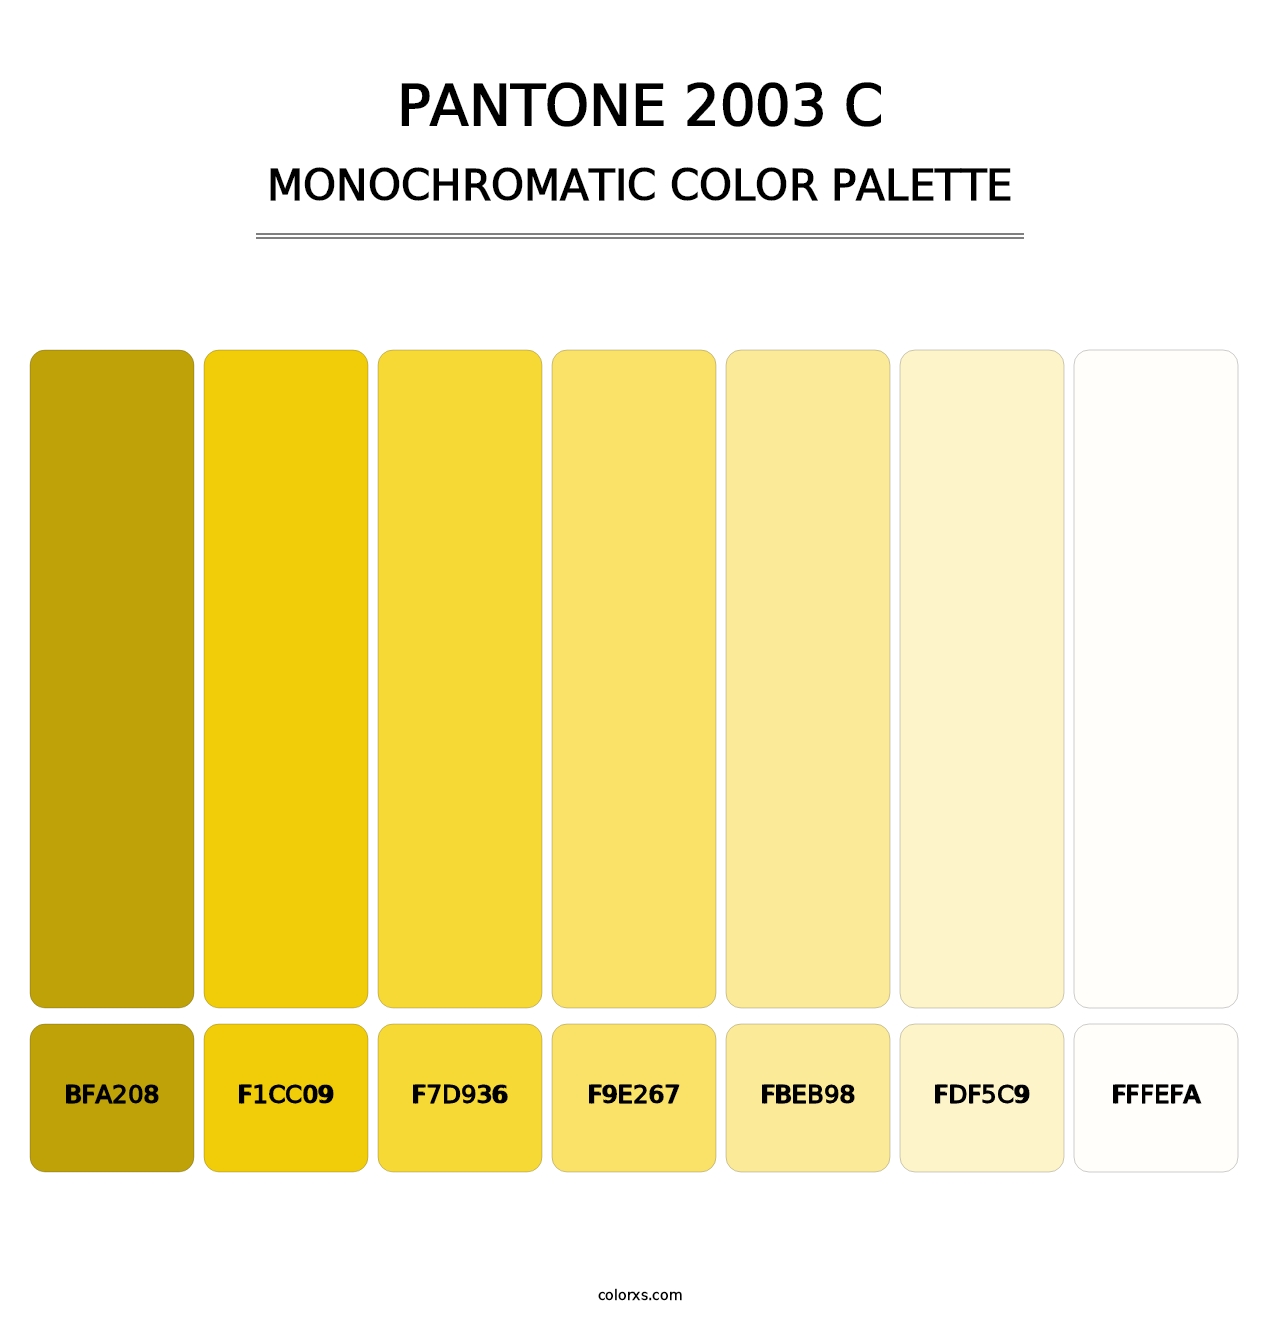 PANTONE 2003 C - Monochromatic Color Palette